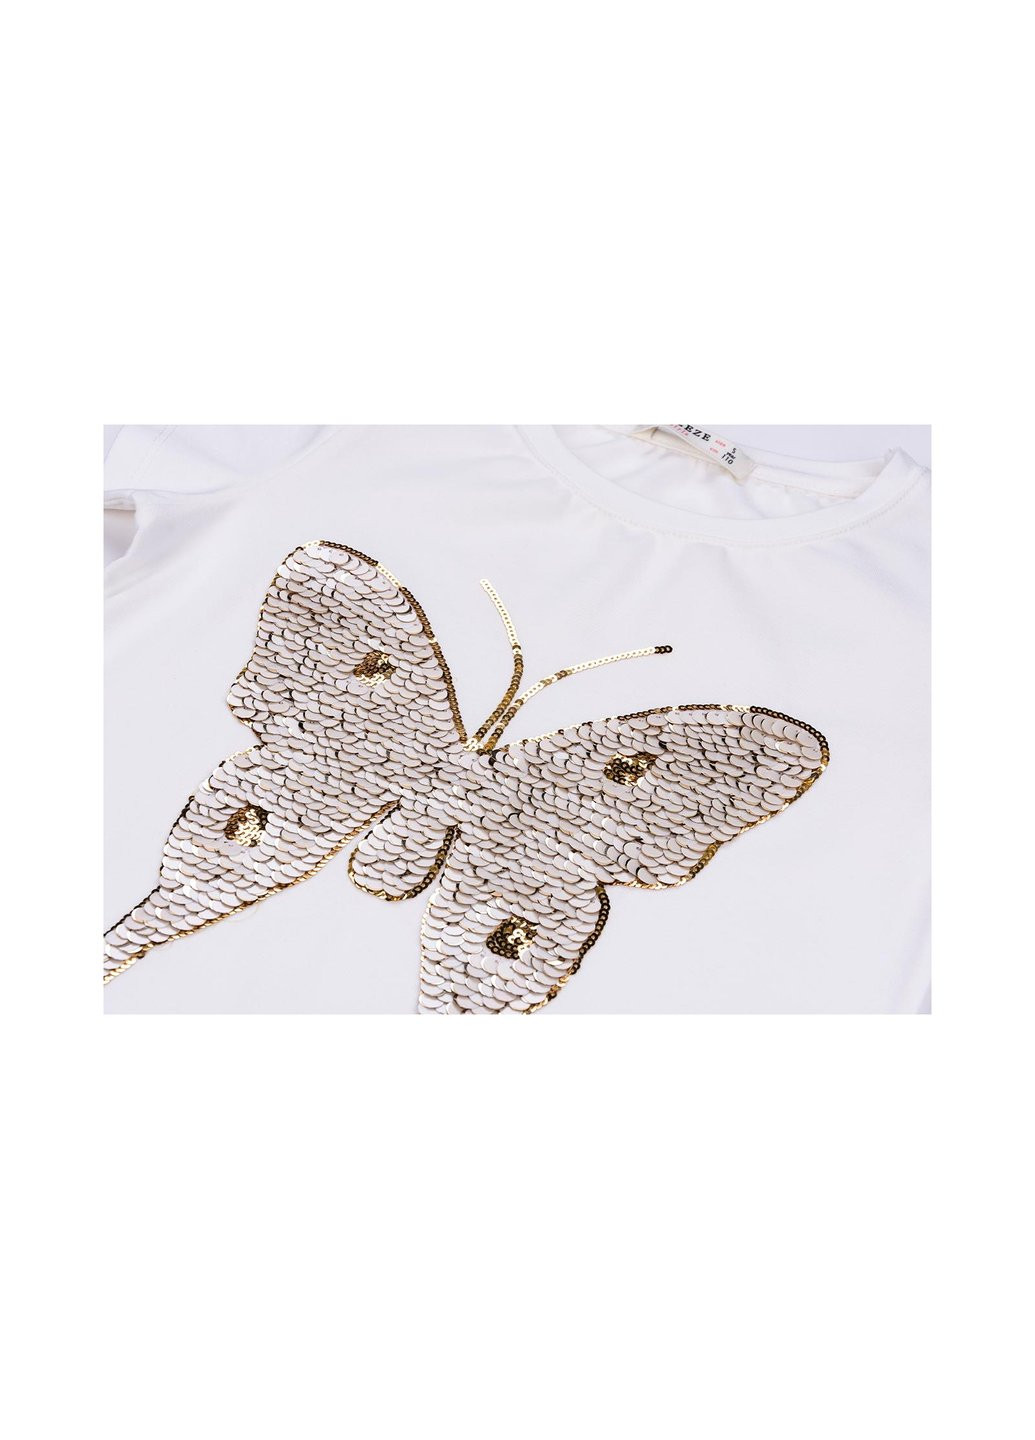 Комбинированная футболка детская с бабочкой из пайеток (11055-140g-cream) Breeze